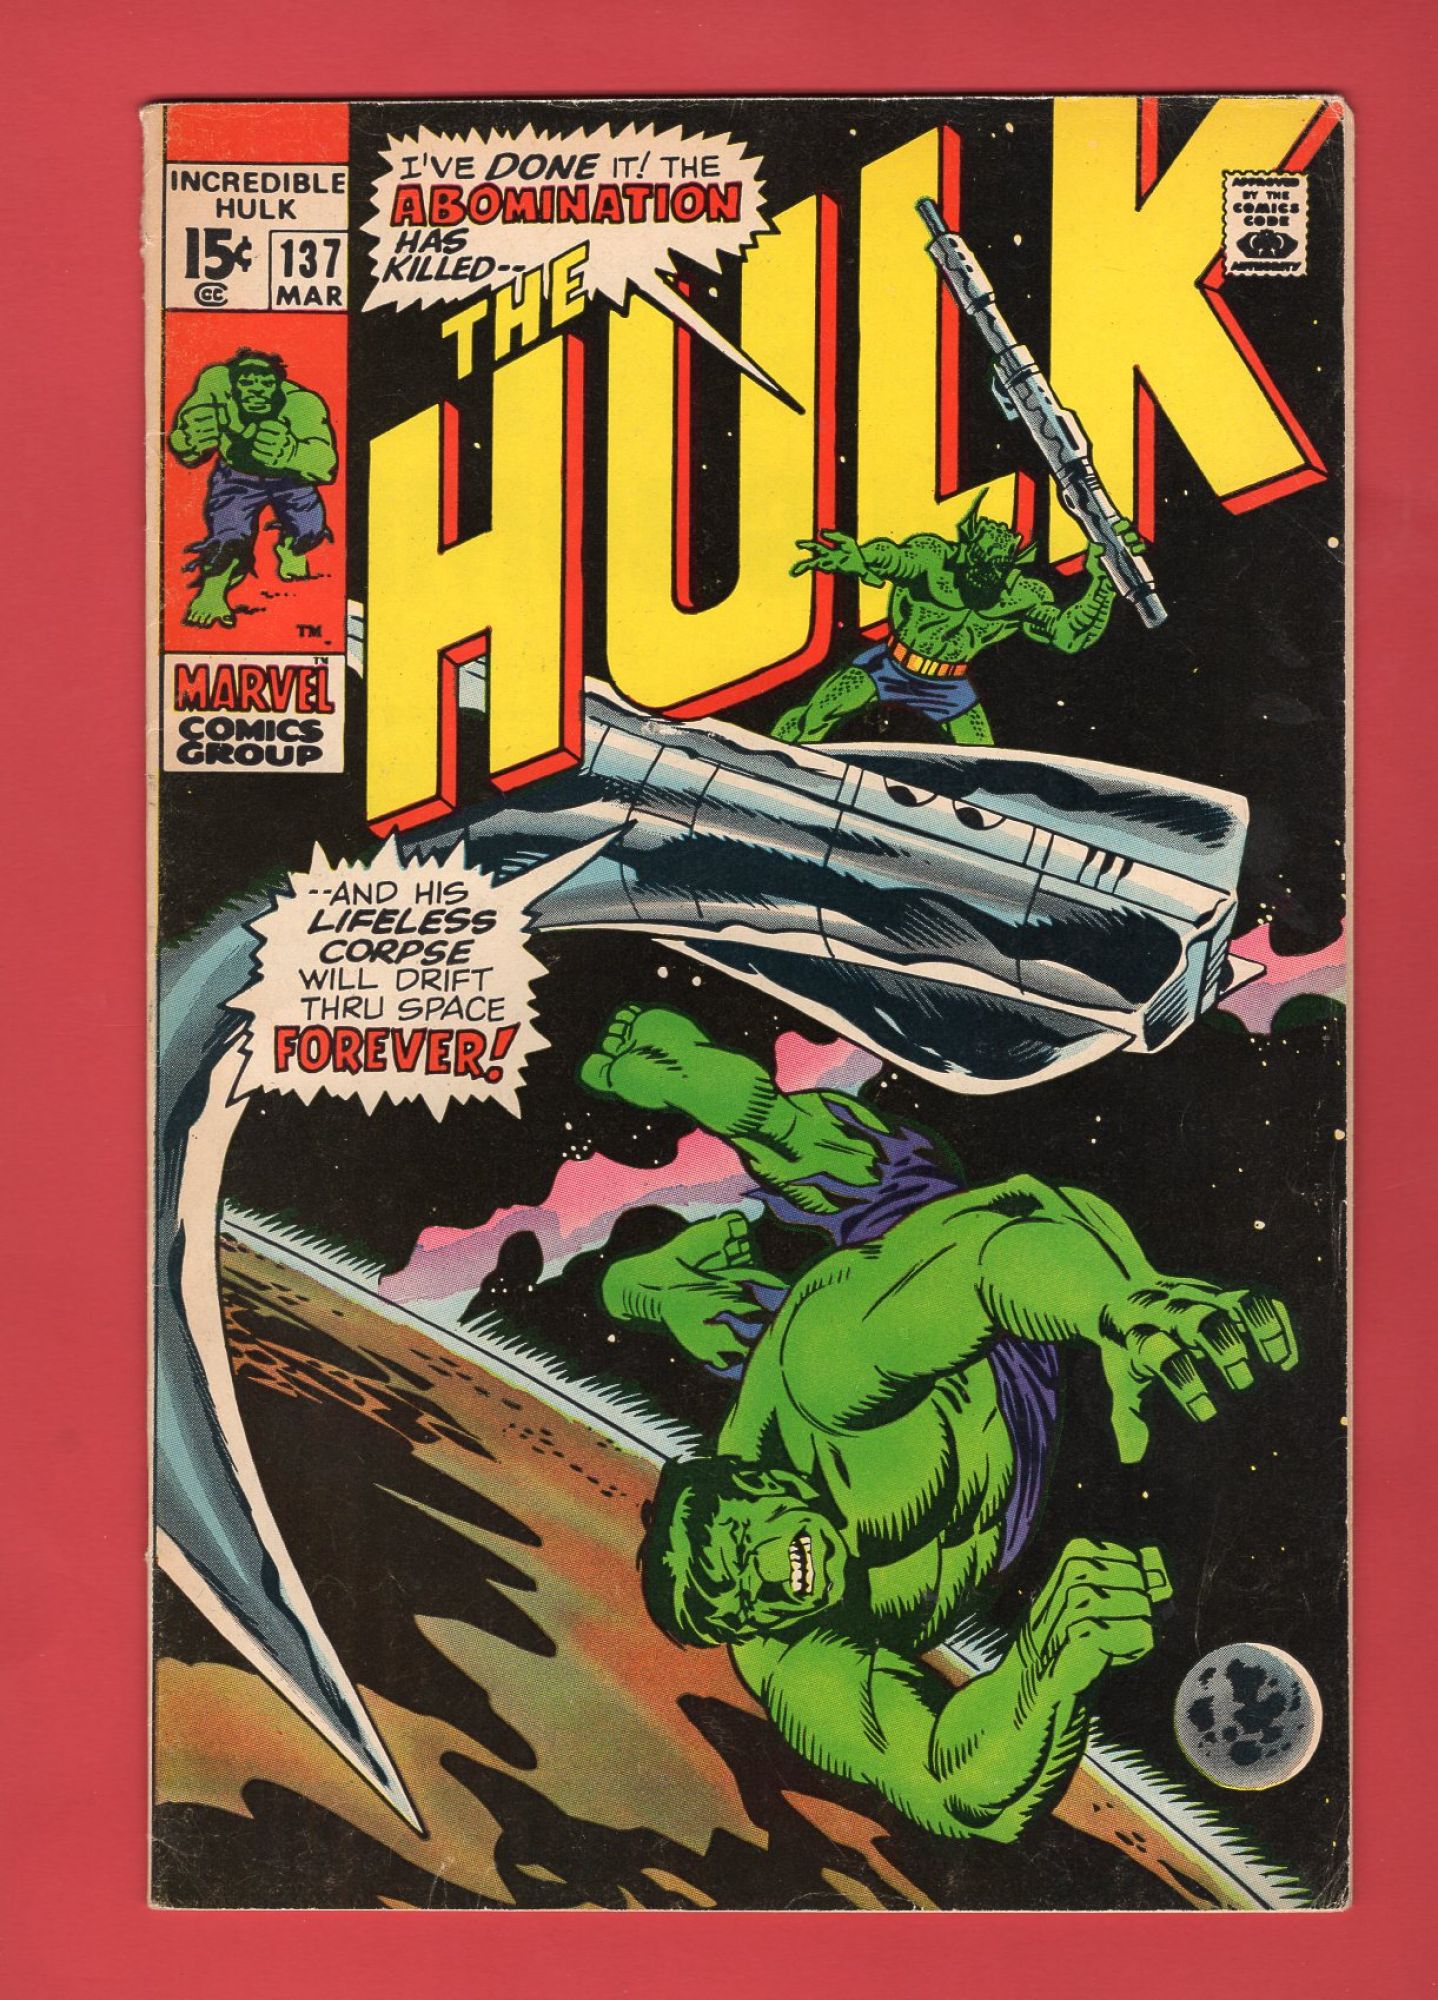 Incredible Hulk #137, Mar 1971, 6.5 FN+